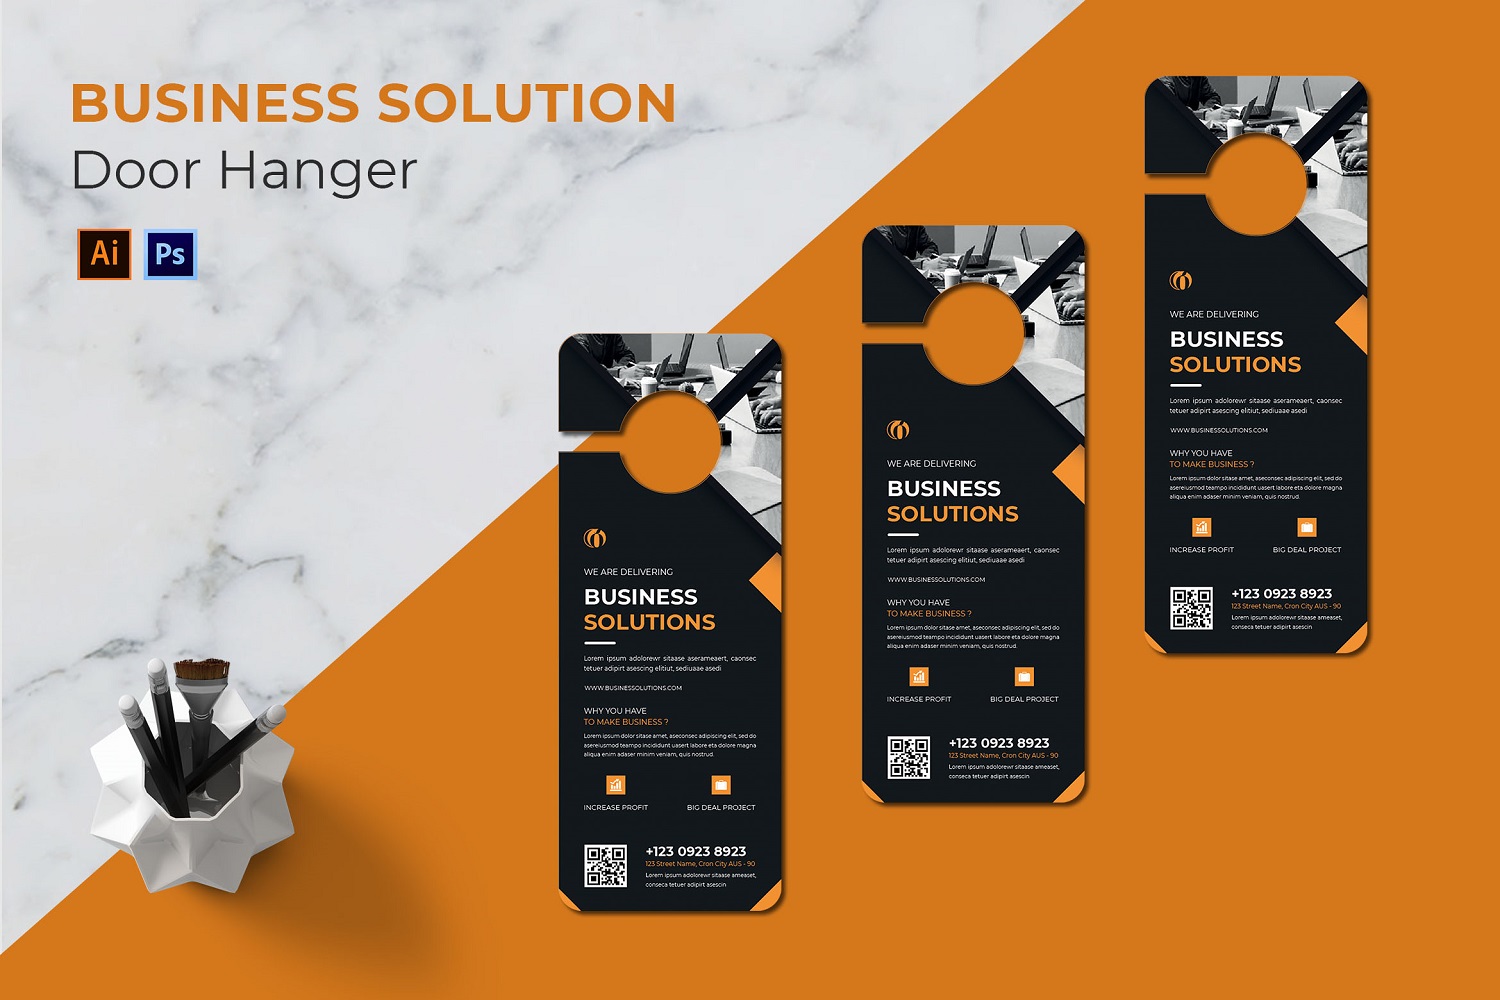 Business Solutions Door Hanger Corporate identity template